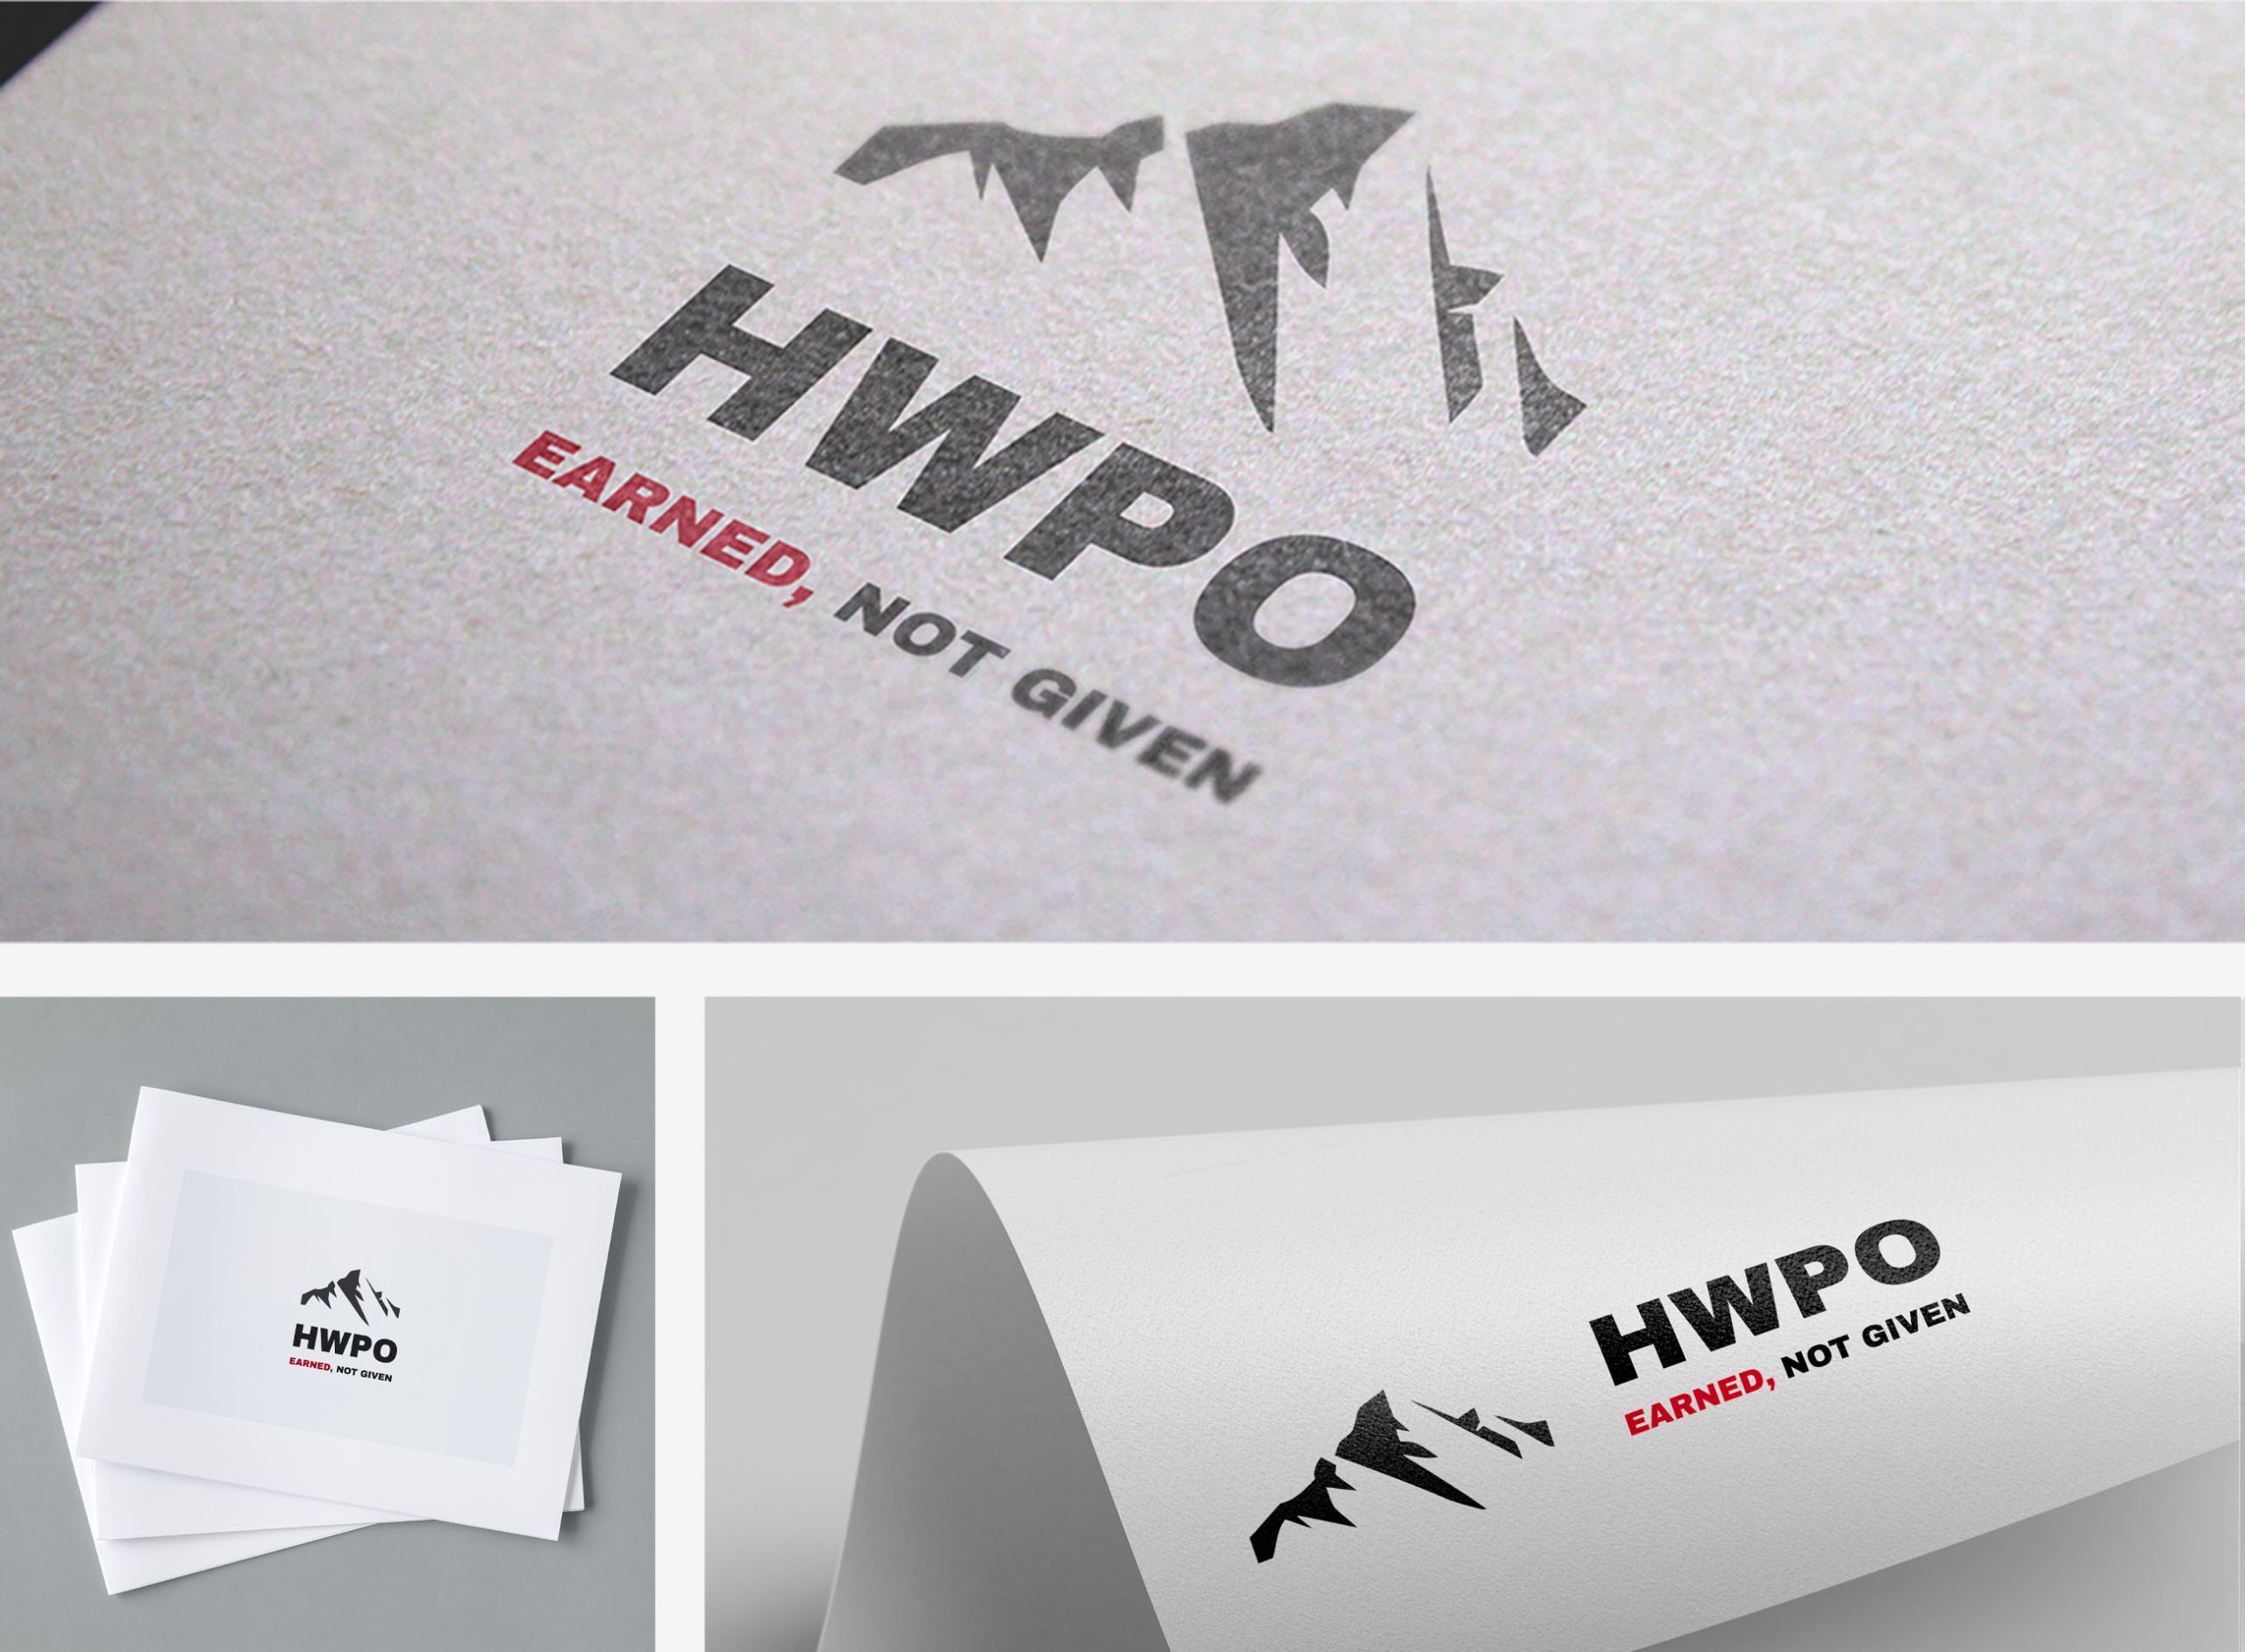 طراحی لوگو، فونت و رنگ سازماین برای شرکت HWPO